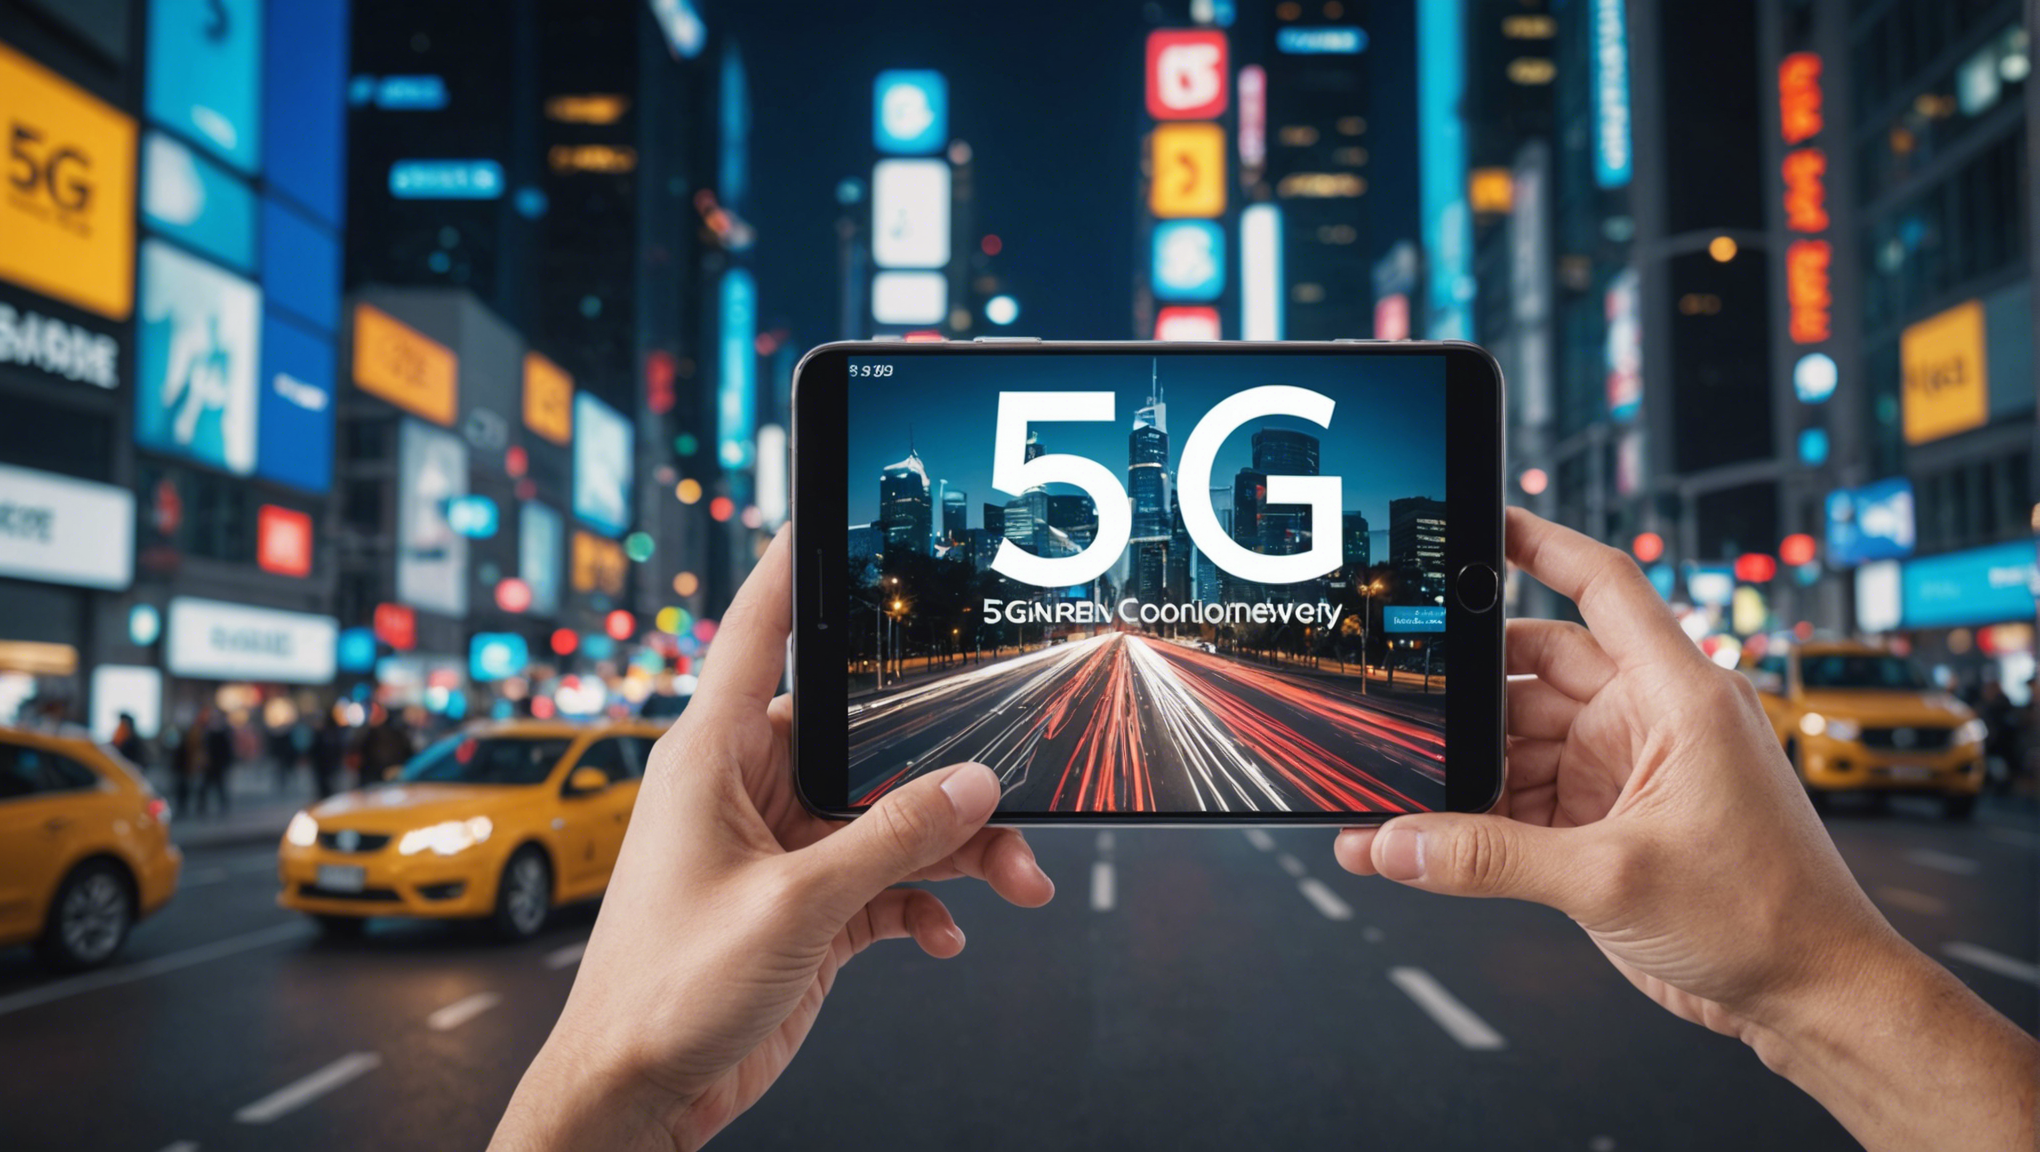 découvrez comment la 5g révolutionne la connexion mobile et ouvre la voie à de nouvelles possibilités technologiques.